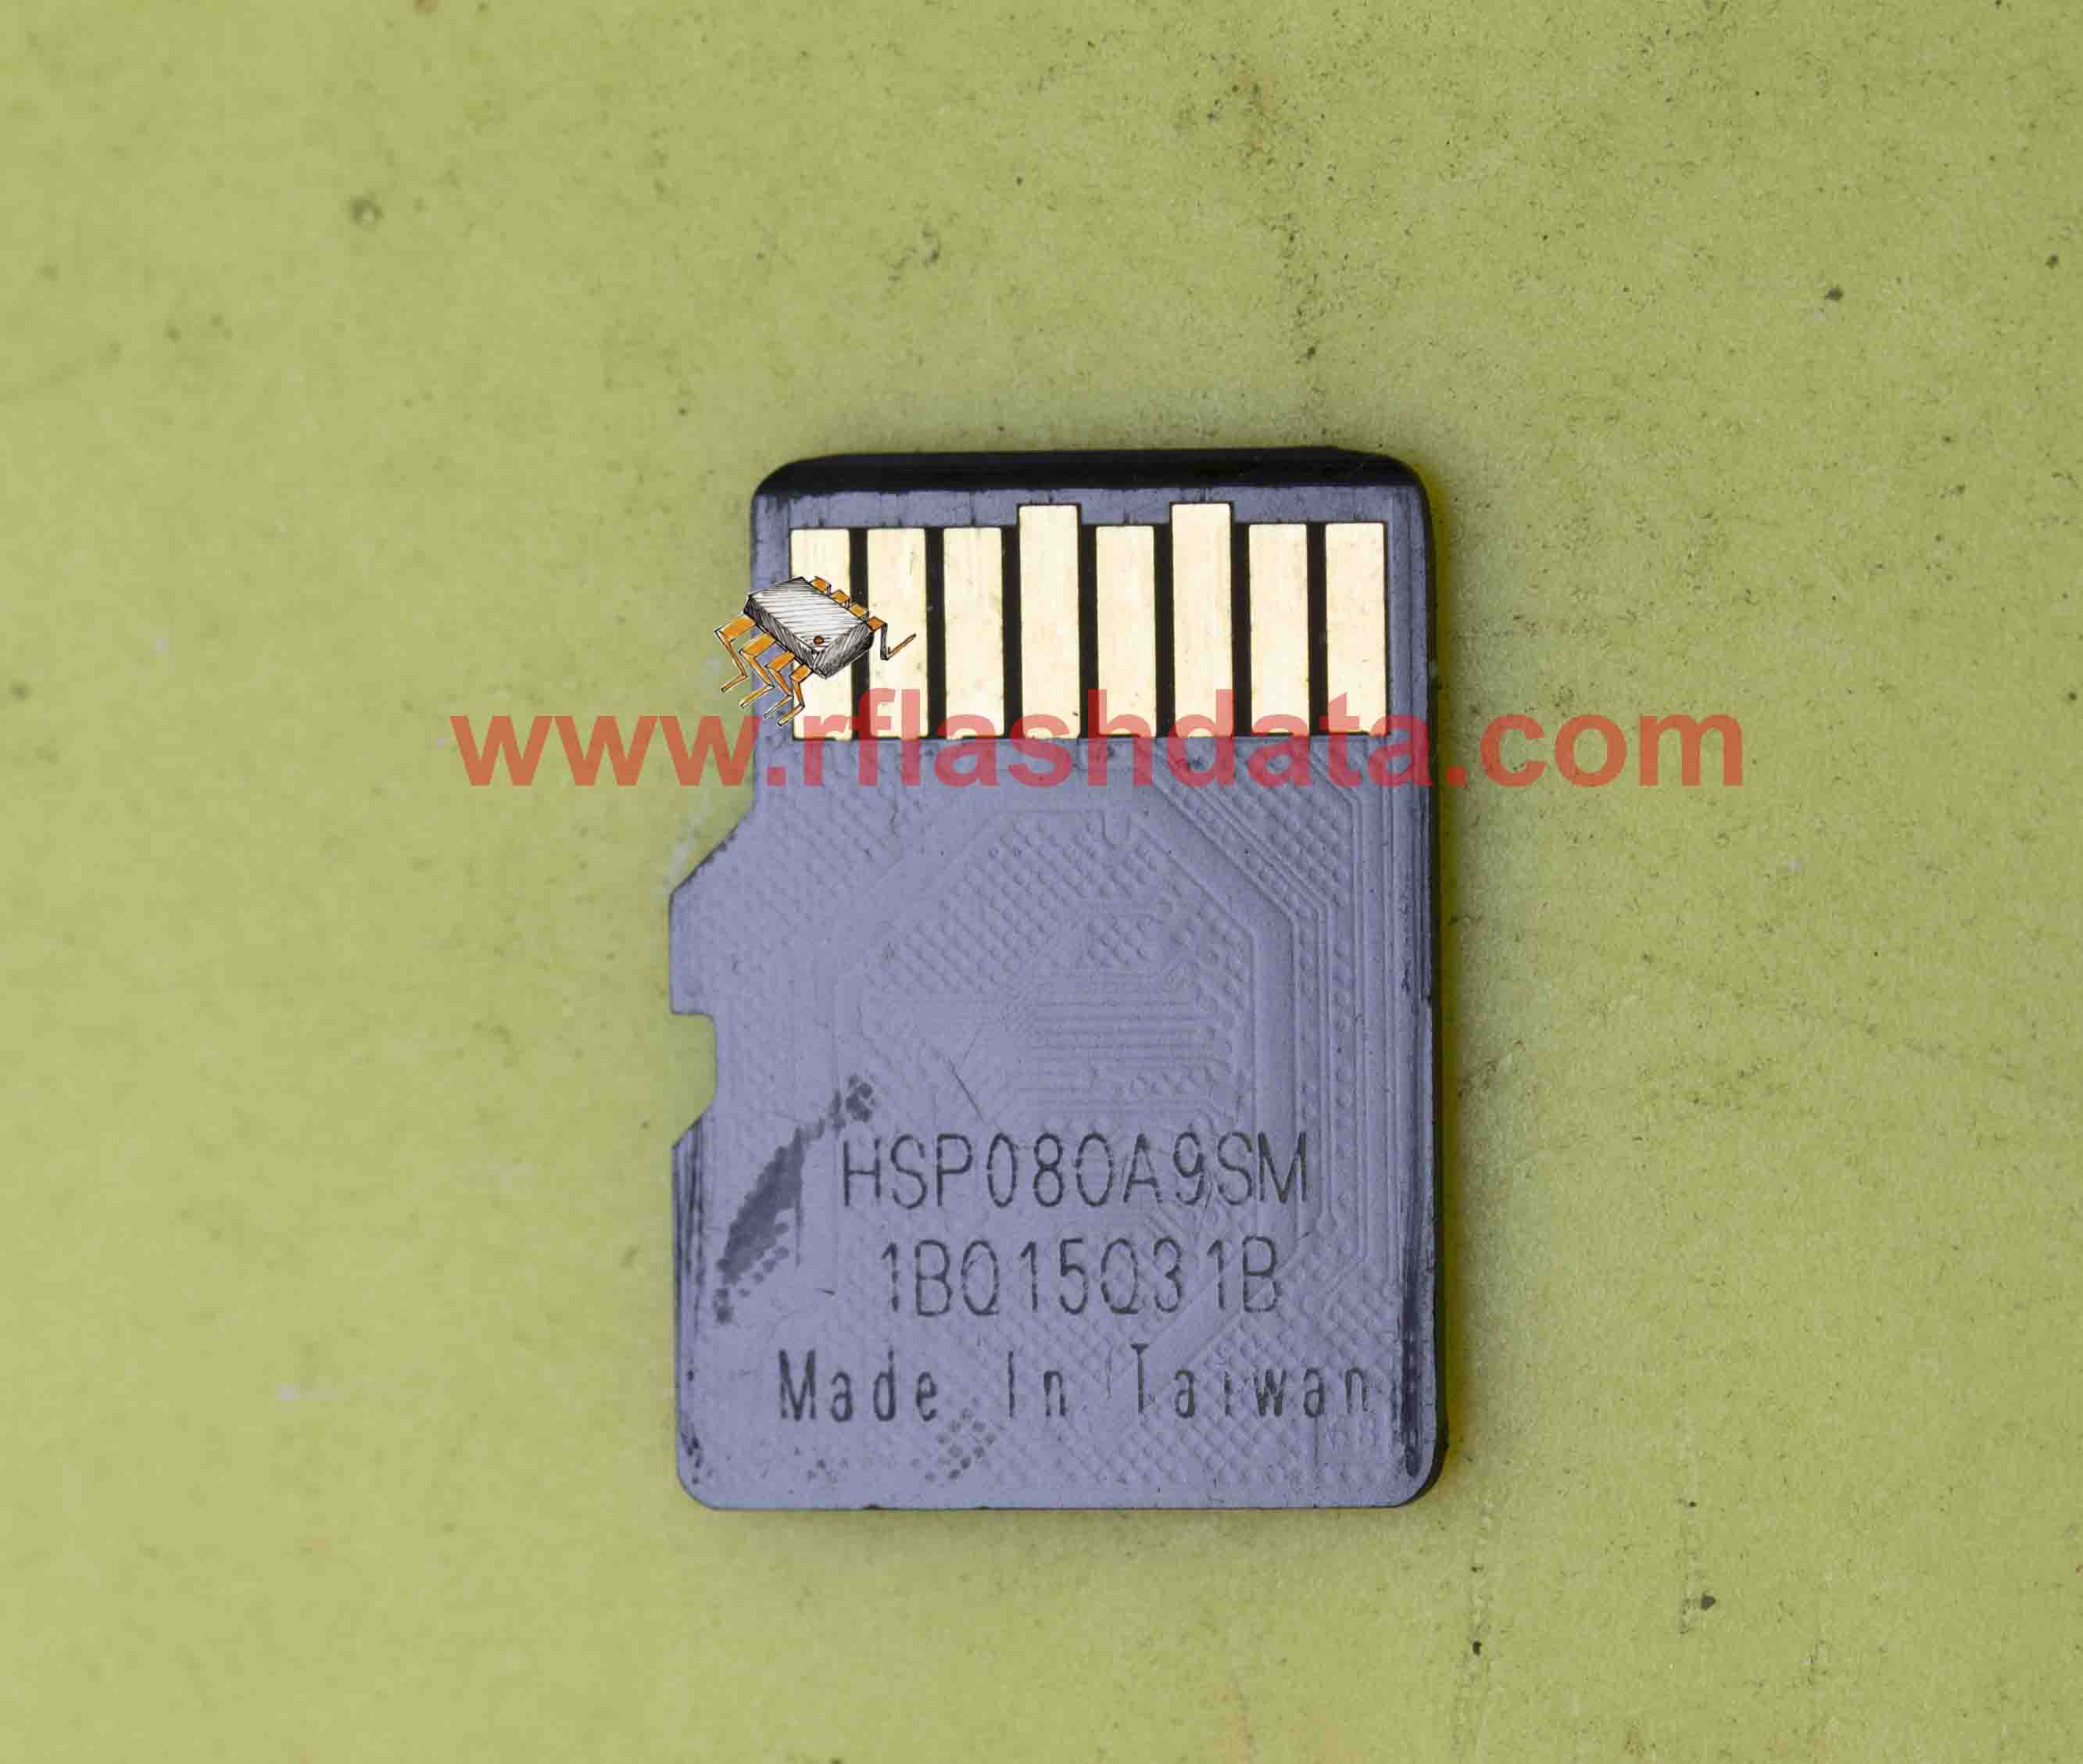 HSP080A9SM_1B015031B_microSD_pinout